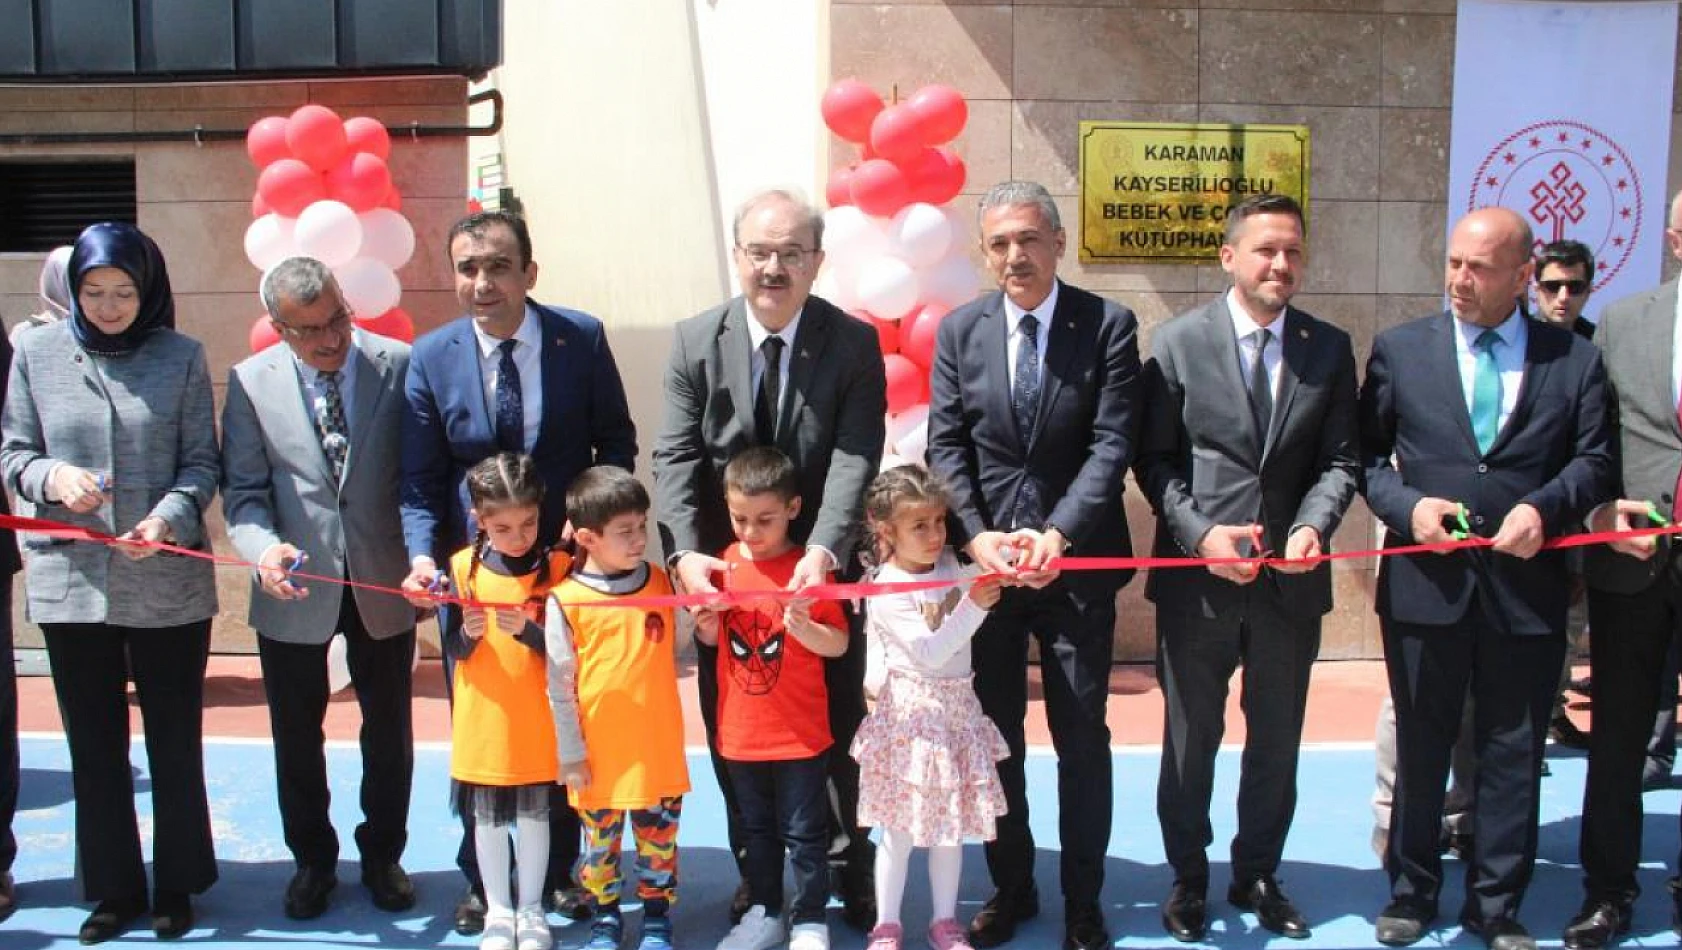 Karaman'da bebek ve çocuk kütüphanesi açıldı